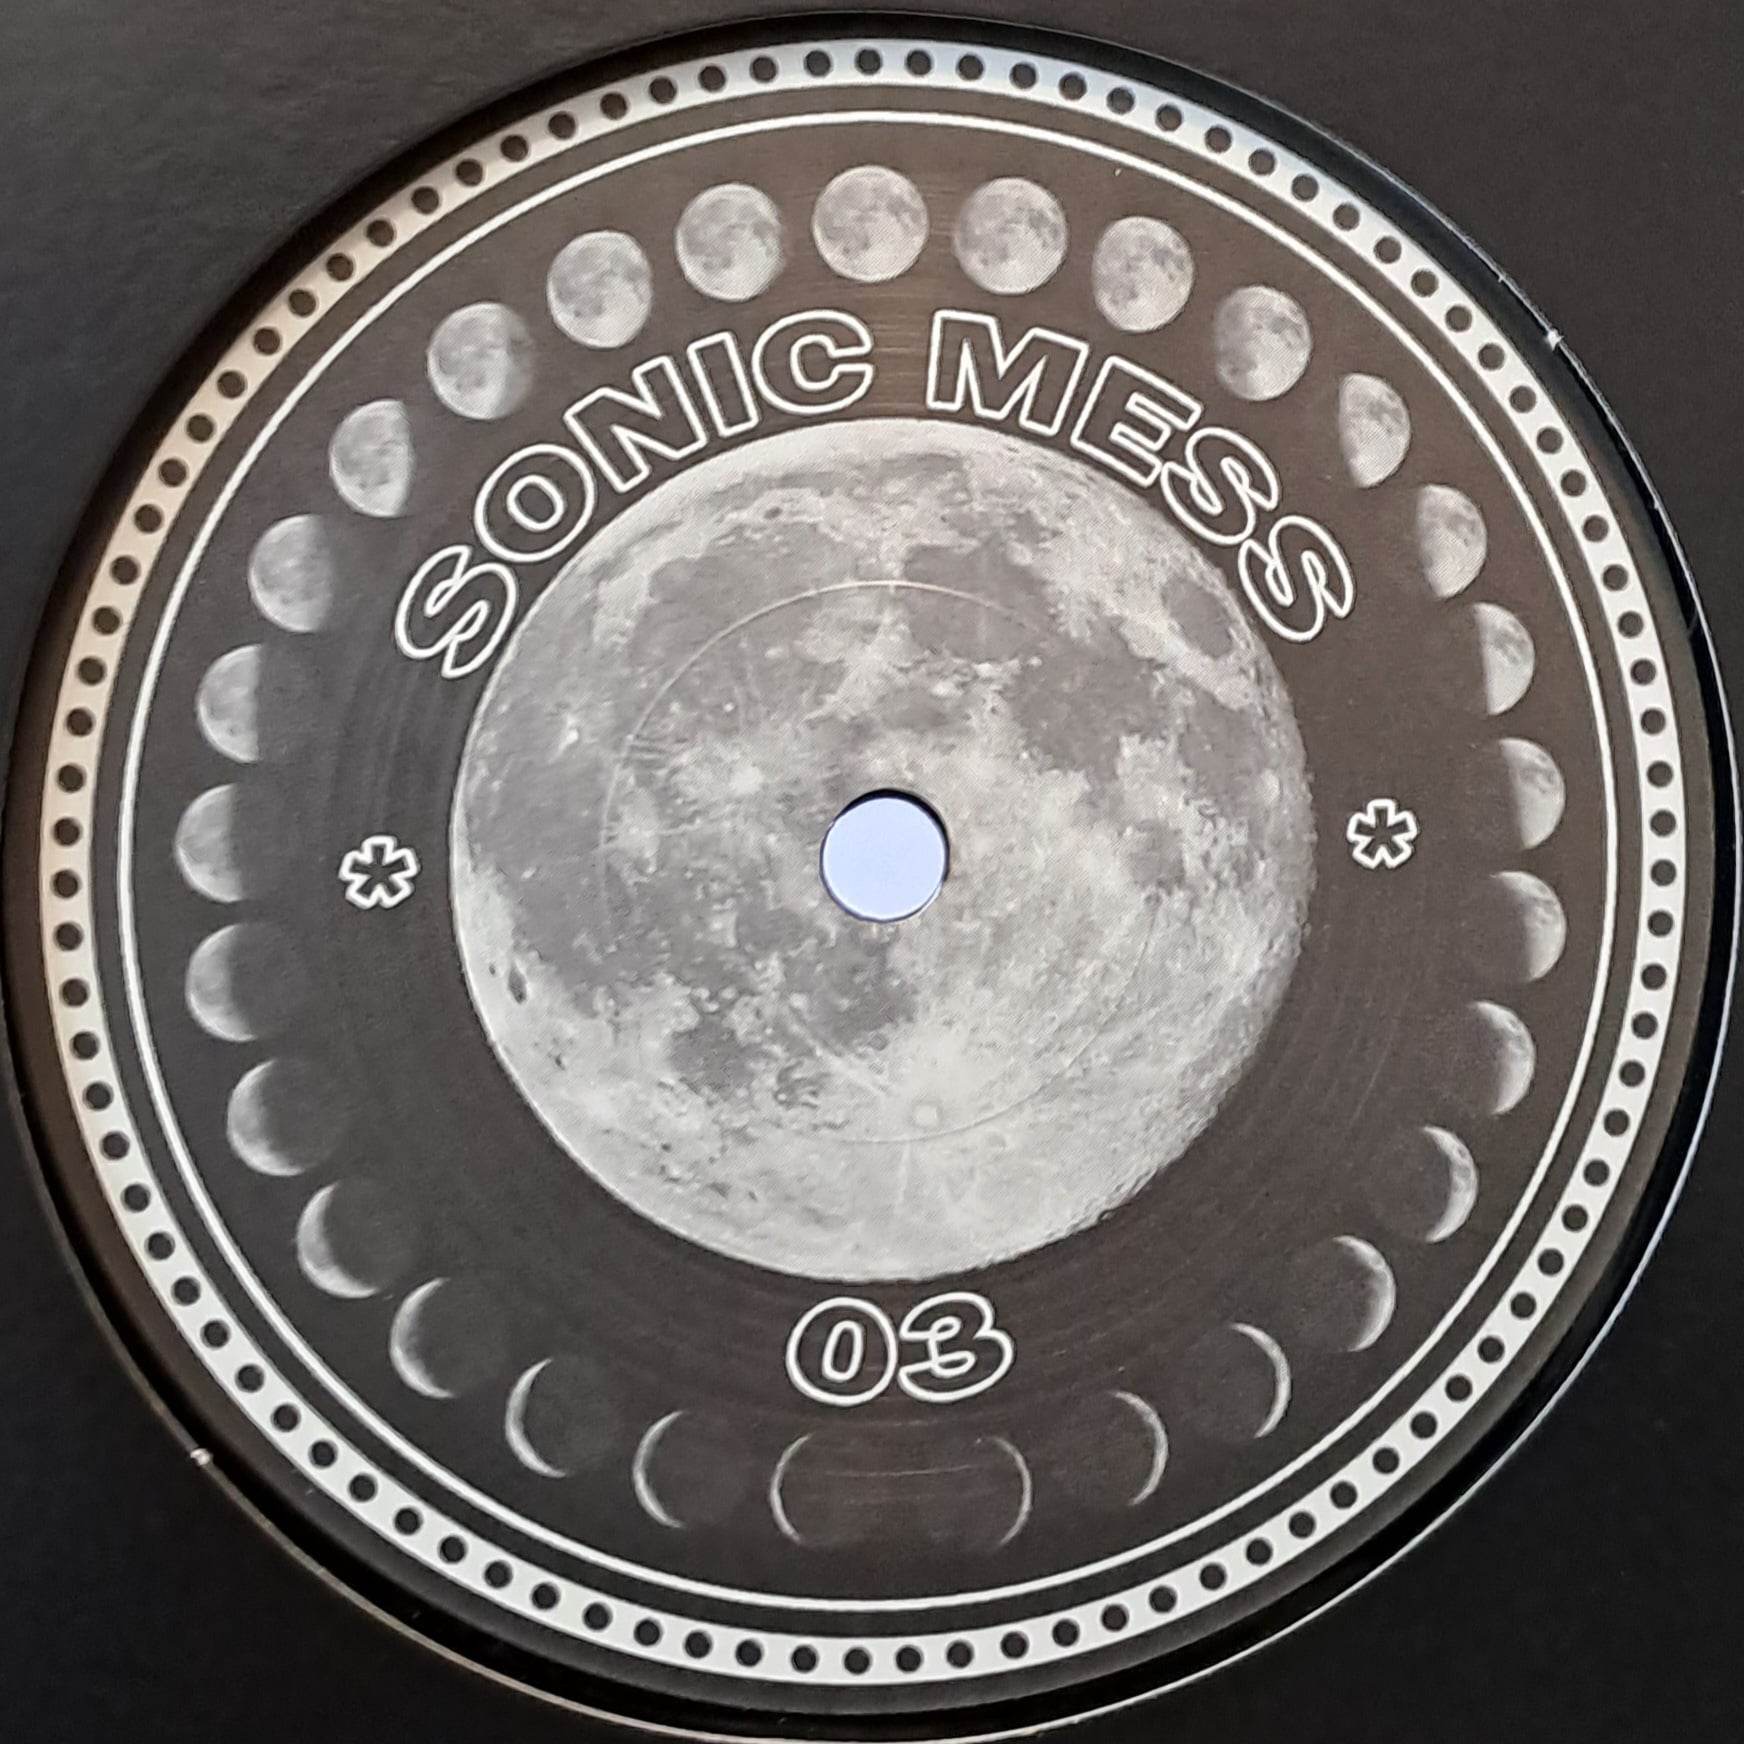 Sonic Mess 03 (dernières copies en stock) - vinyle acid